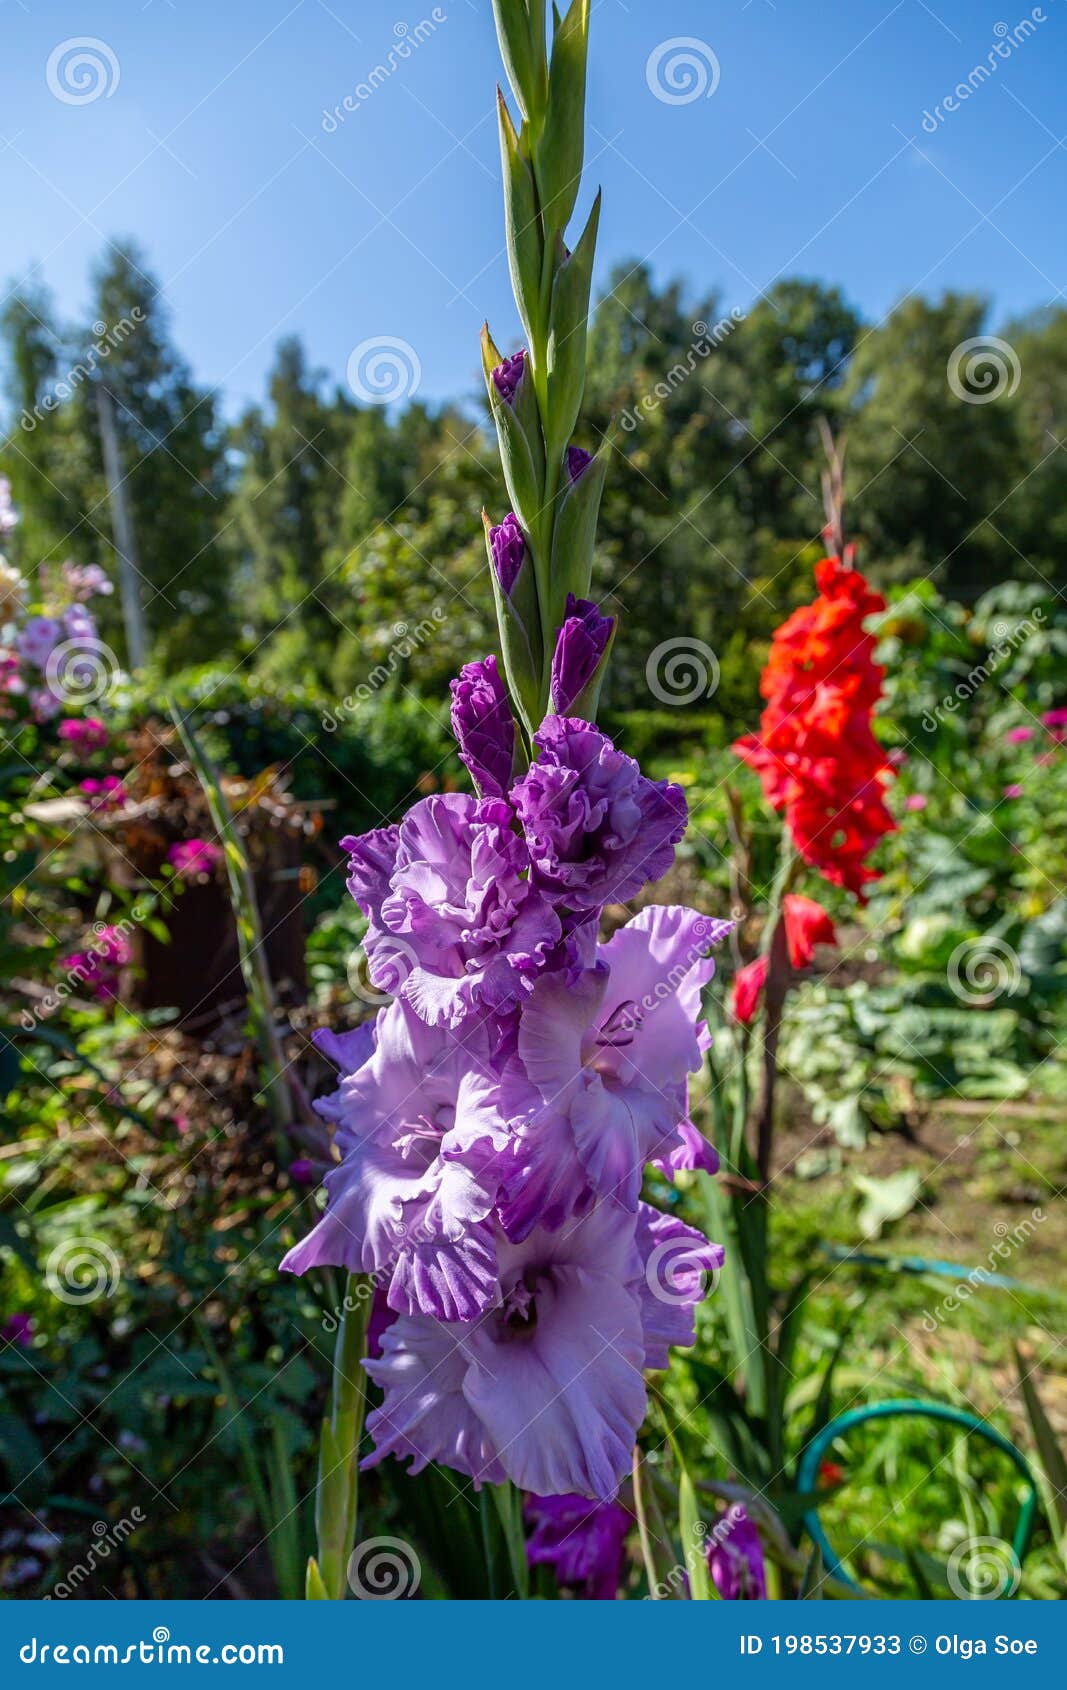 purple flower gladiolos close up in garden